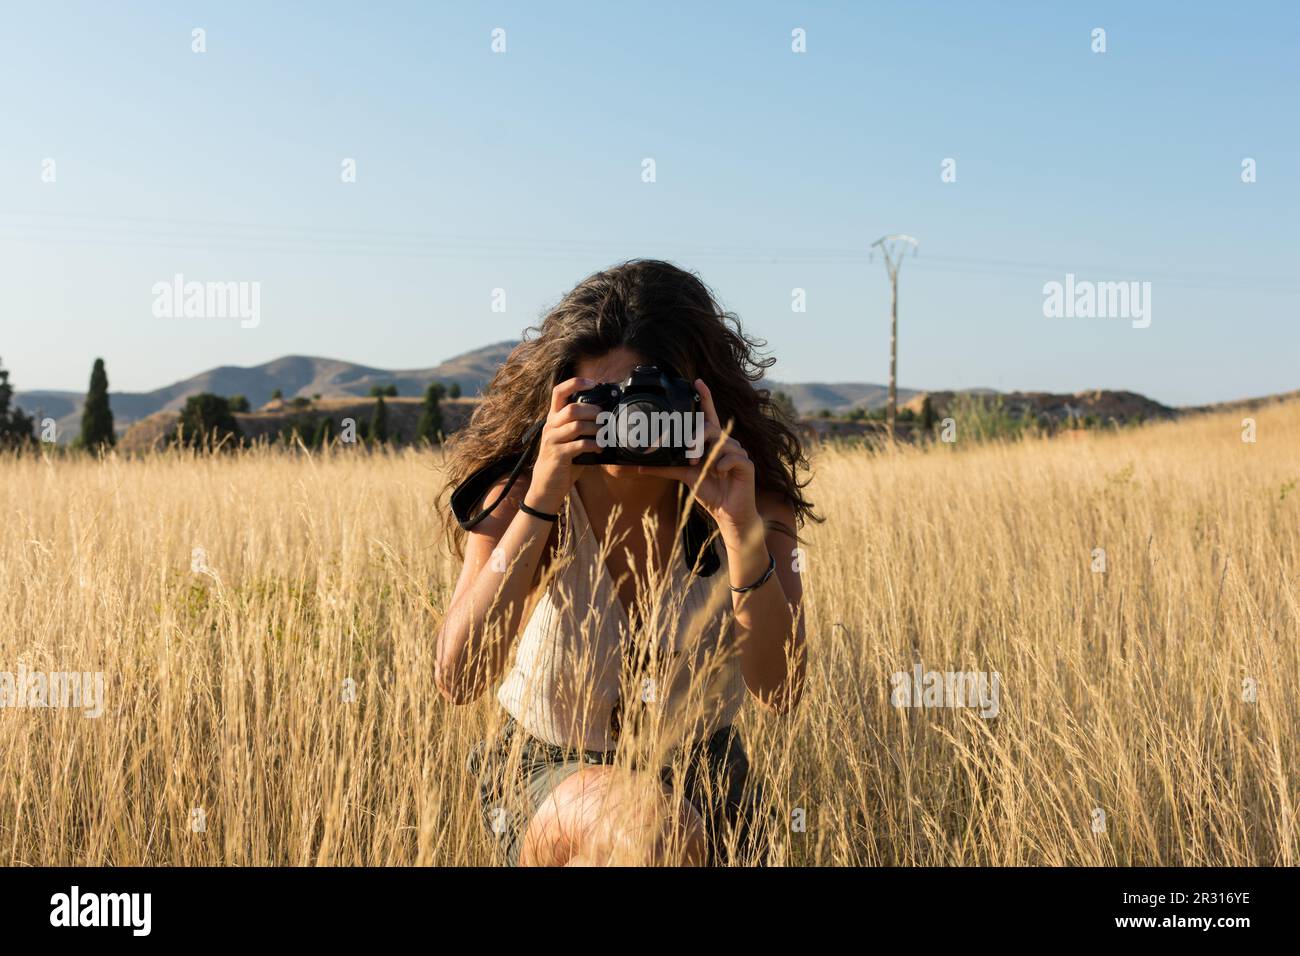 Une jeune femme prend une photo avec un appareil photo dans un pré au soleil Banque D'Images